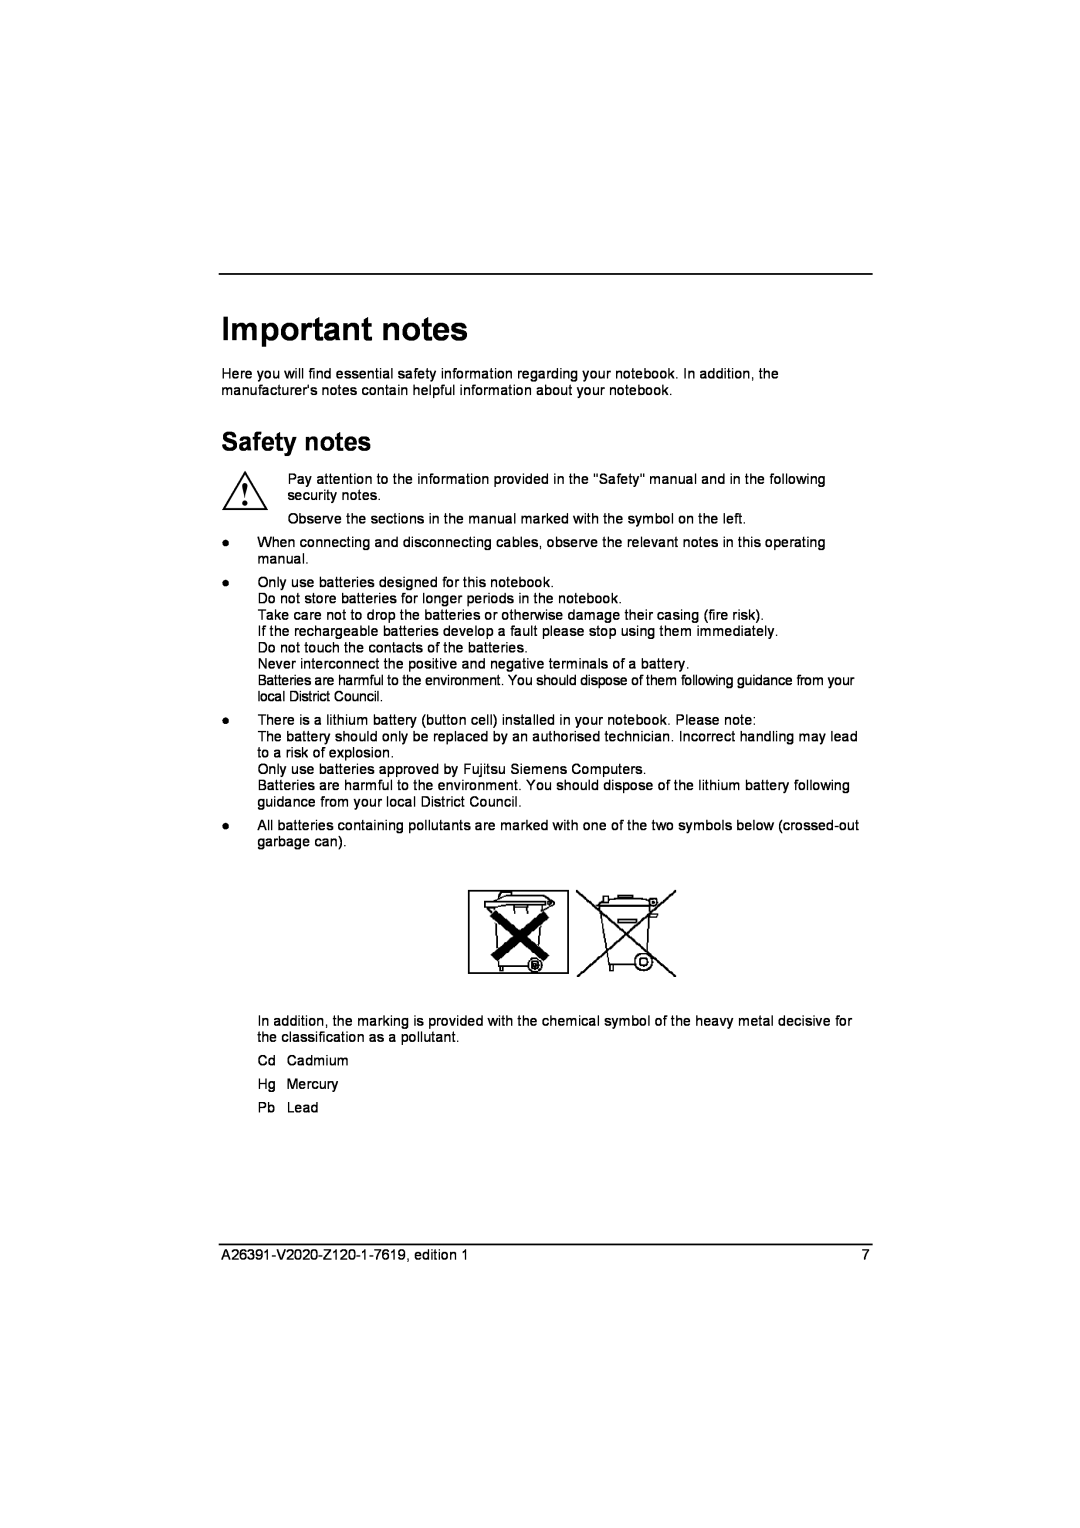 Fujitsu Siemens Computers V2020 manual Important notes, Safety notes 